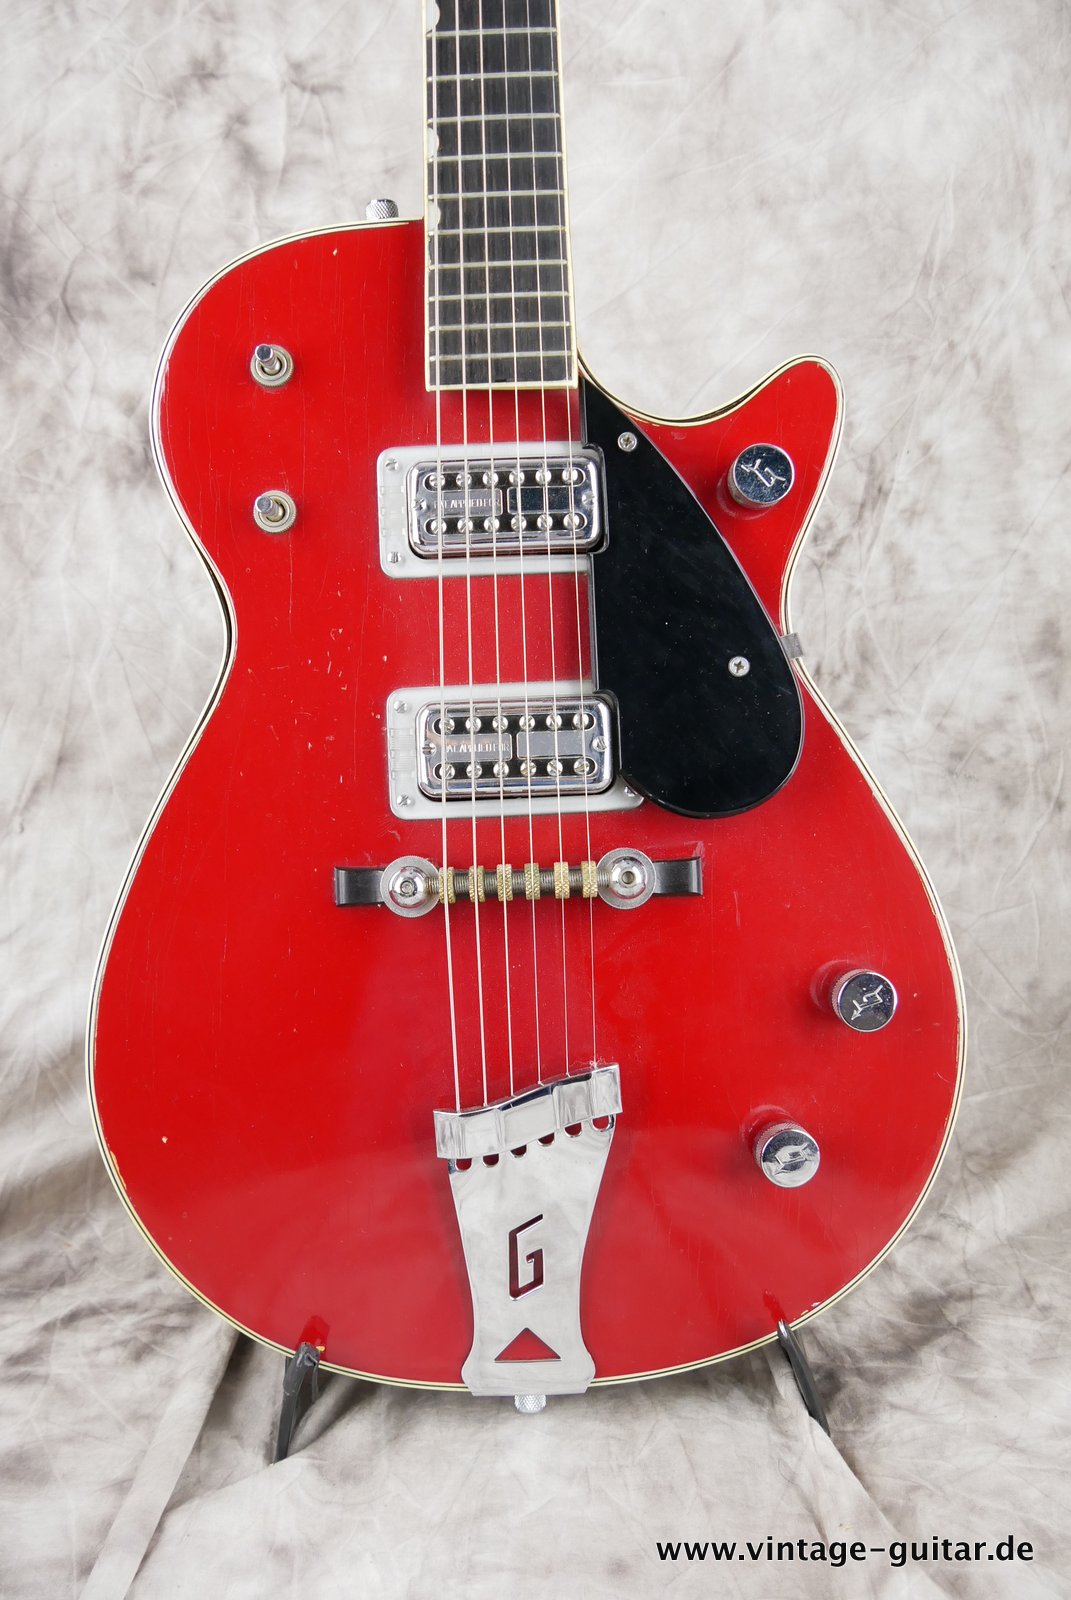 Gretsch-Firebird-6131-1959-002.JPG